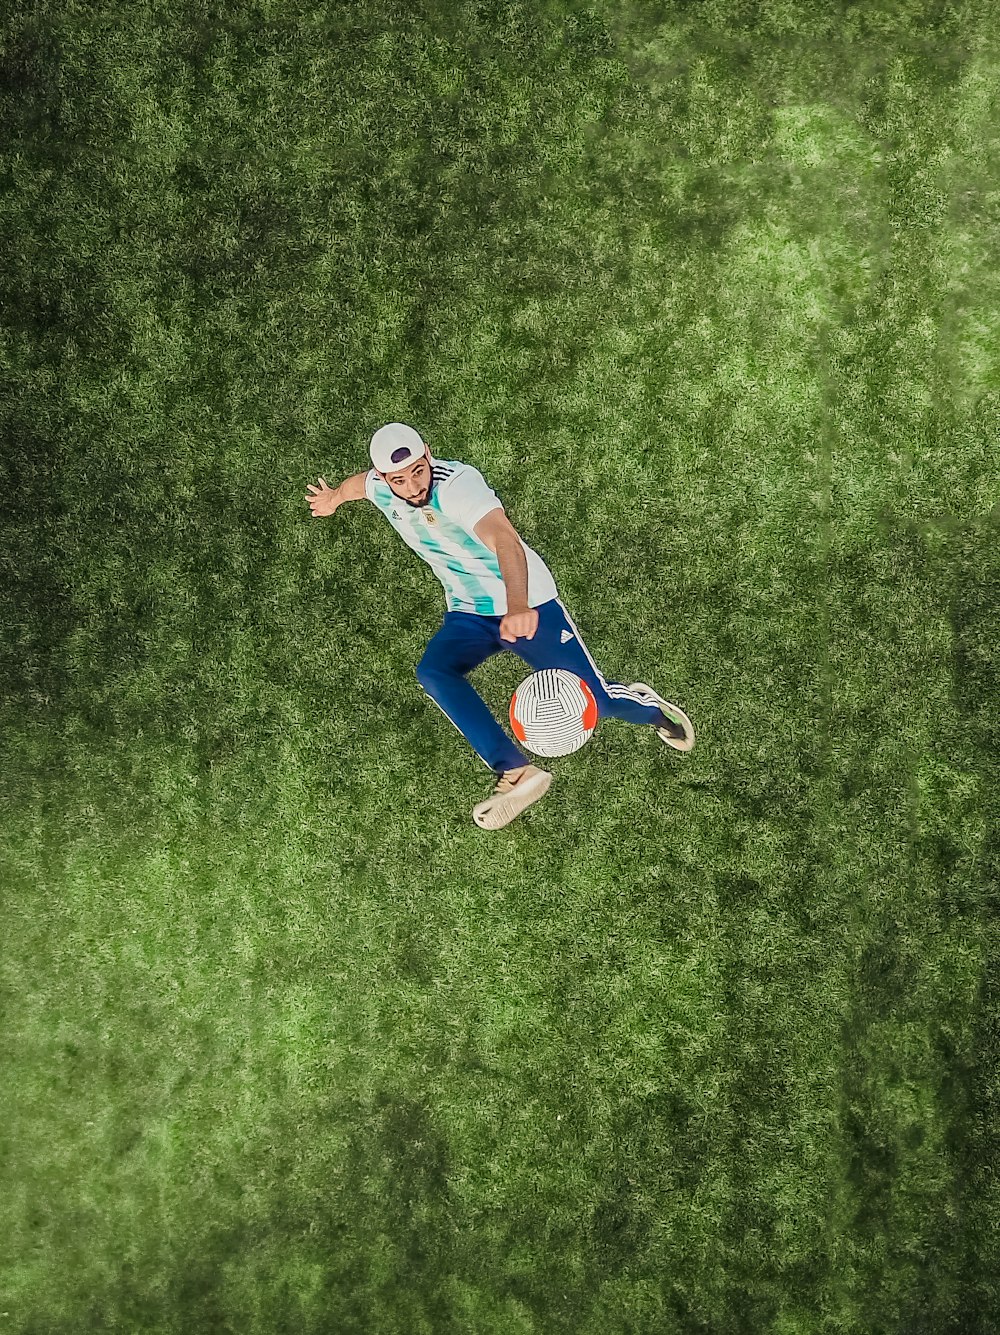 Vista aérea del hombre jugando a la pelota de fútbol en la hierba